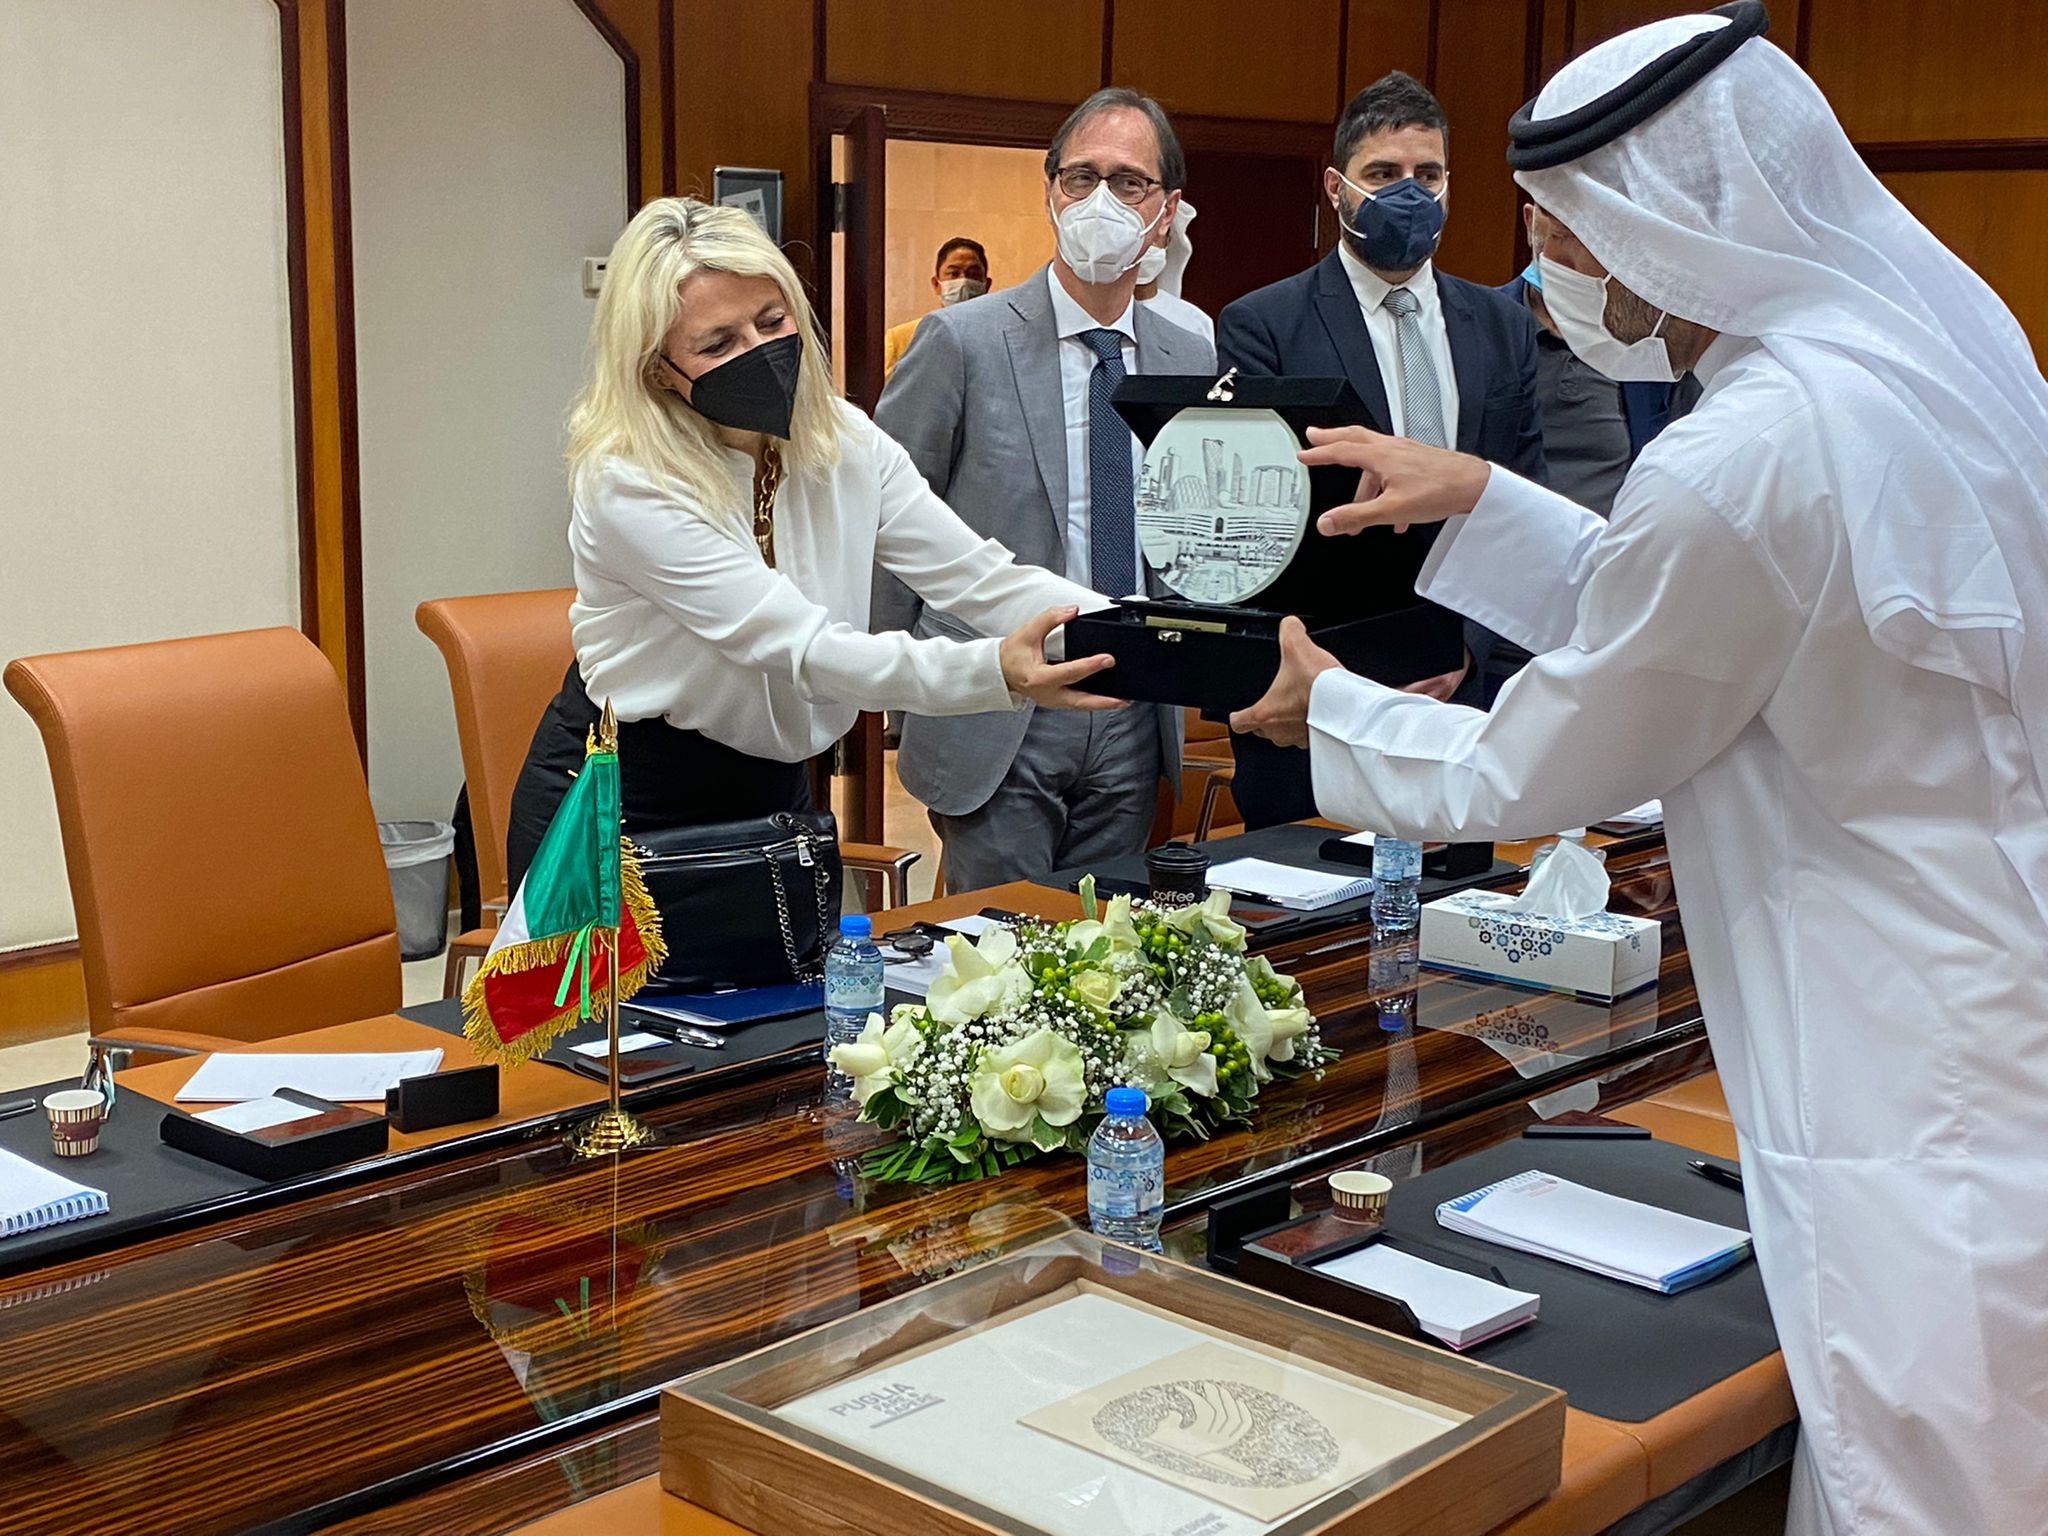 Galleria Emirati Arabi Uniti, continuano gli incontri istituzionali delle delegazioni pugliesi guidate dagli assessori Delli Noci, Maraschio e dal rettore Cupertino - Diapositiva 3 di 10